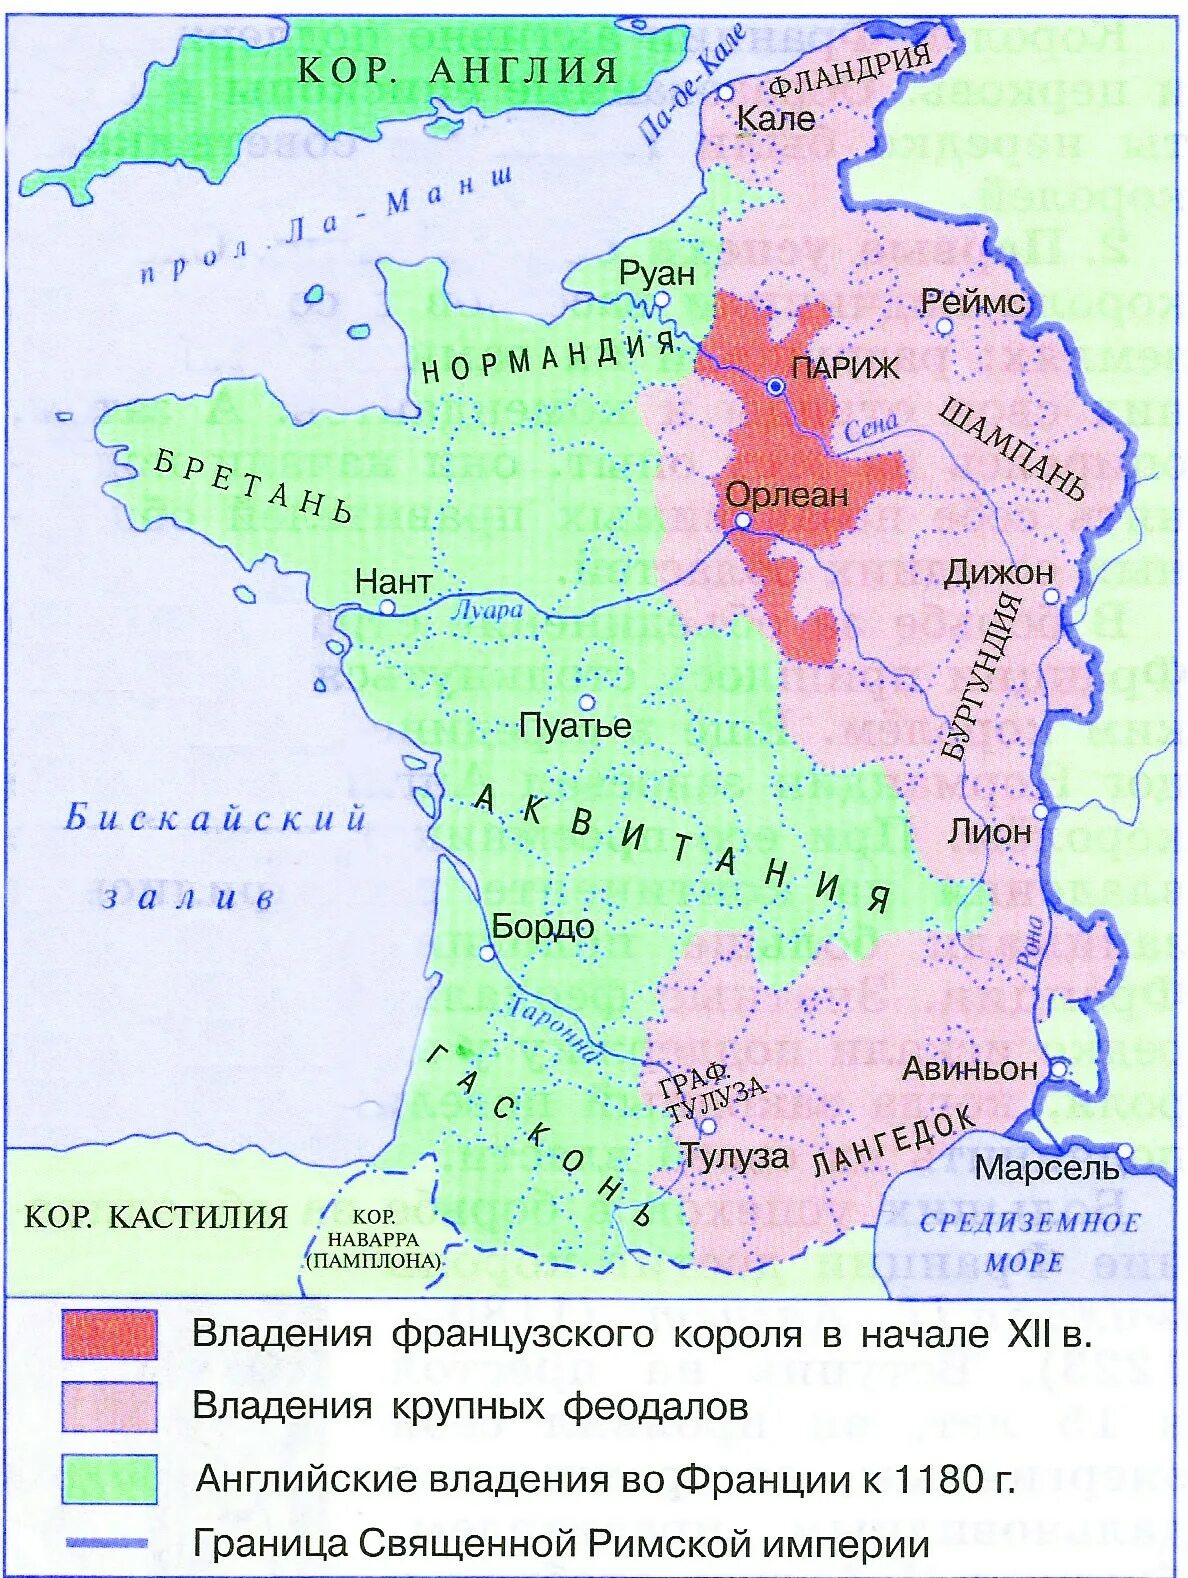 Объединение франции в xii xv. Франция в 12 веке карта. Королевский домен во Франции 12 века. Границы Франции XI-XII ВВ. Франция 12 век карта.